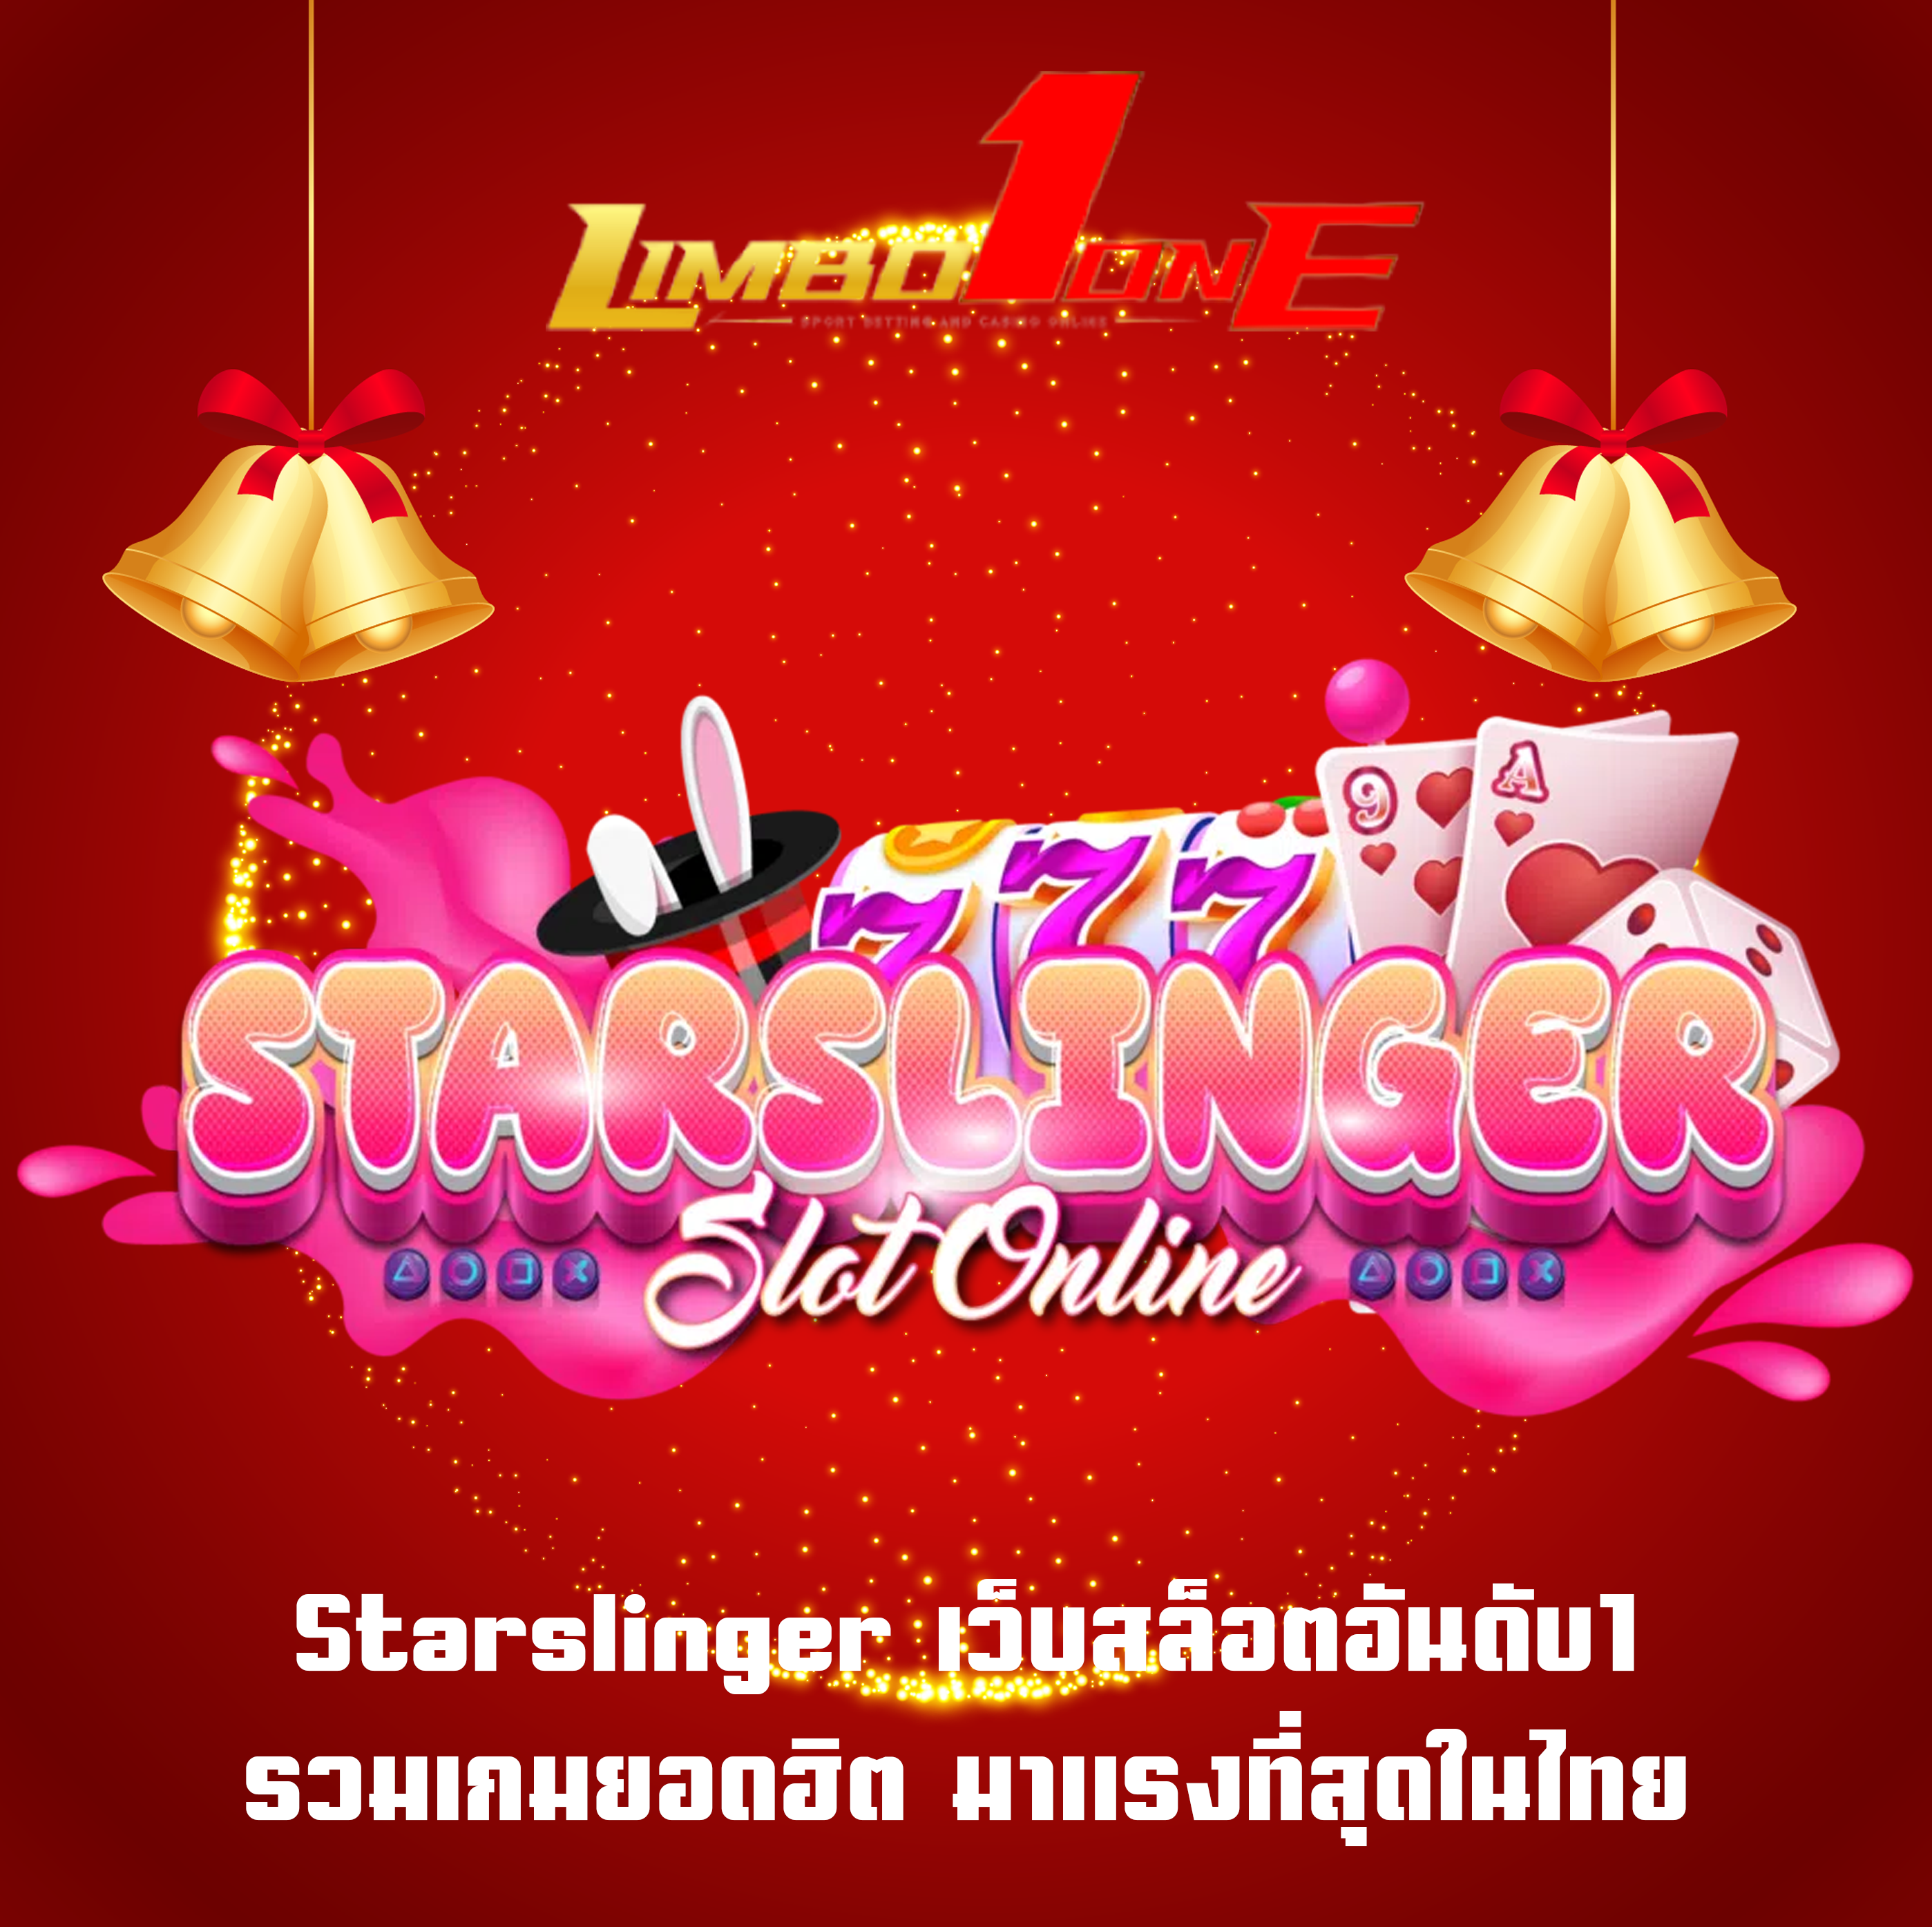 Starslinger เว็บสล็อตอันดับ1 รวมเกมยอดฮิต มาแรงที่สุดในไทย